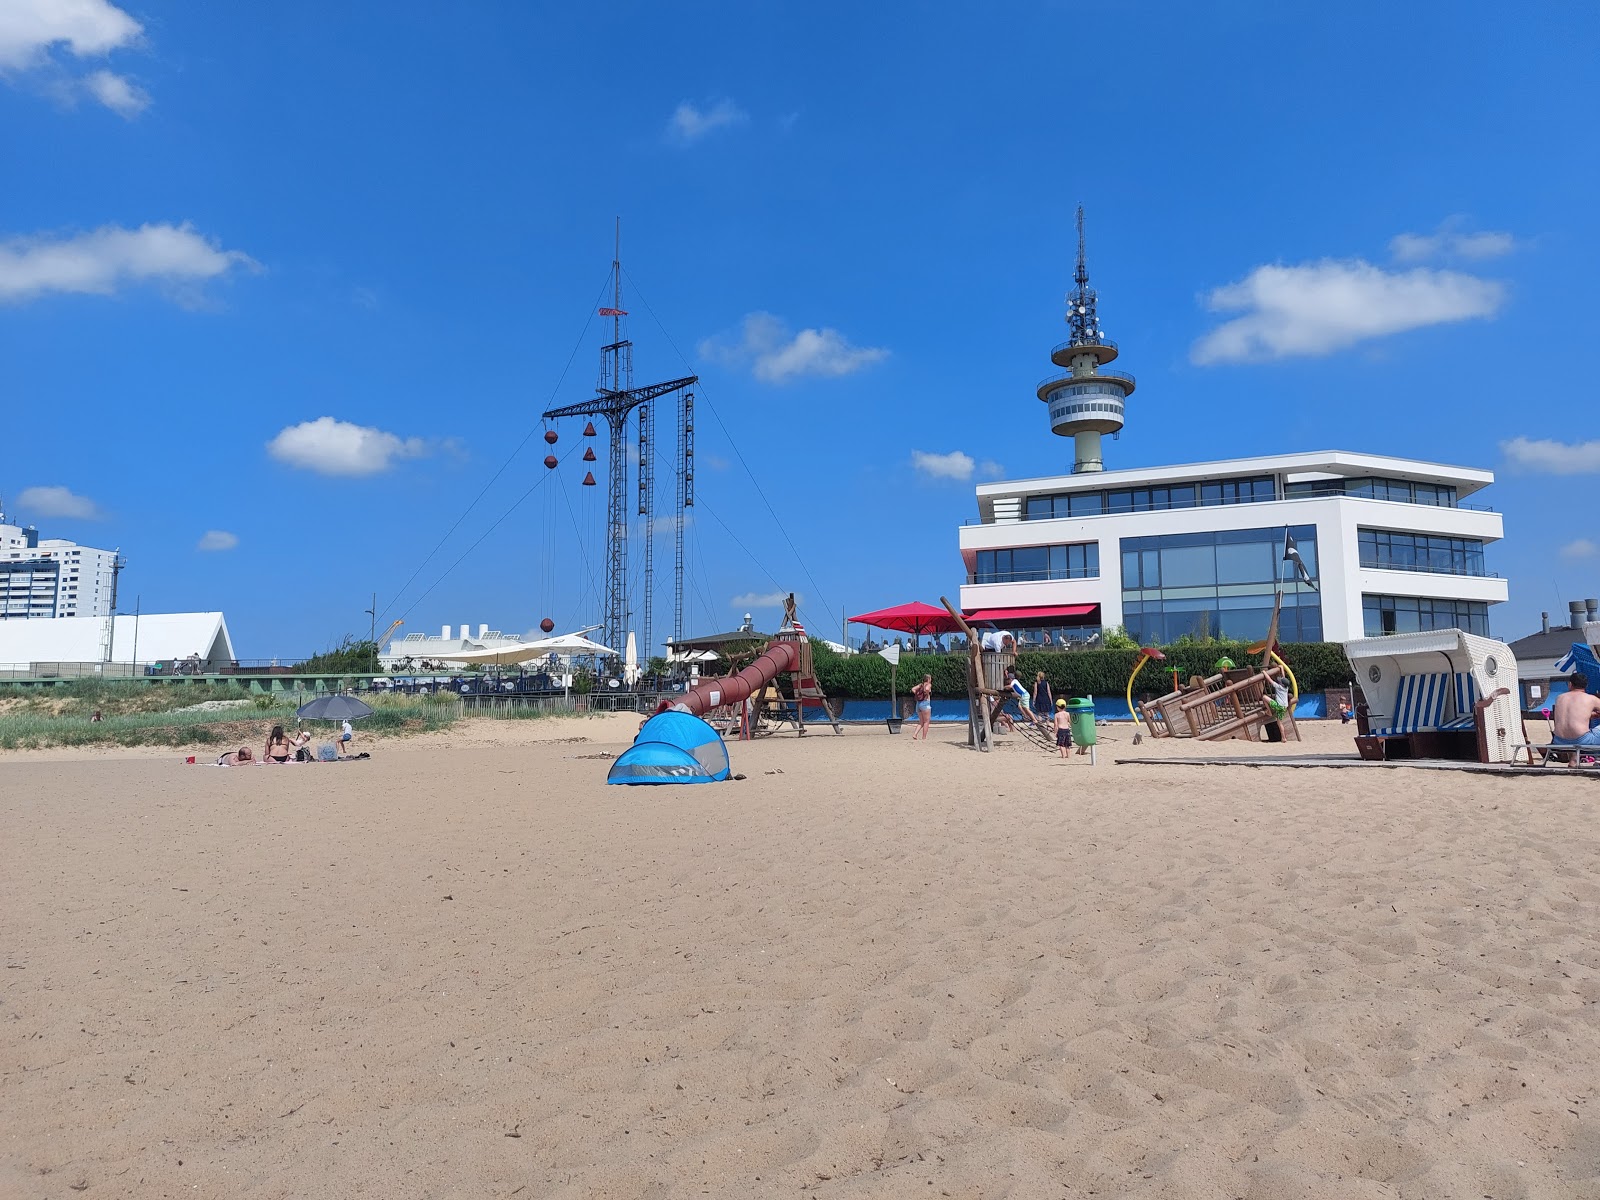 Fotografija Plaža Bremerhaven (Weser Beach) in naselje